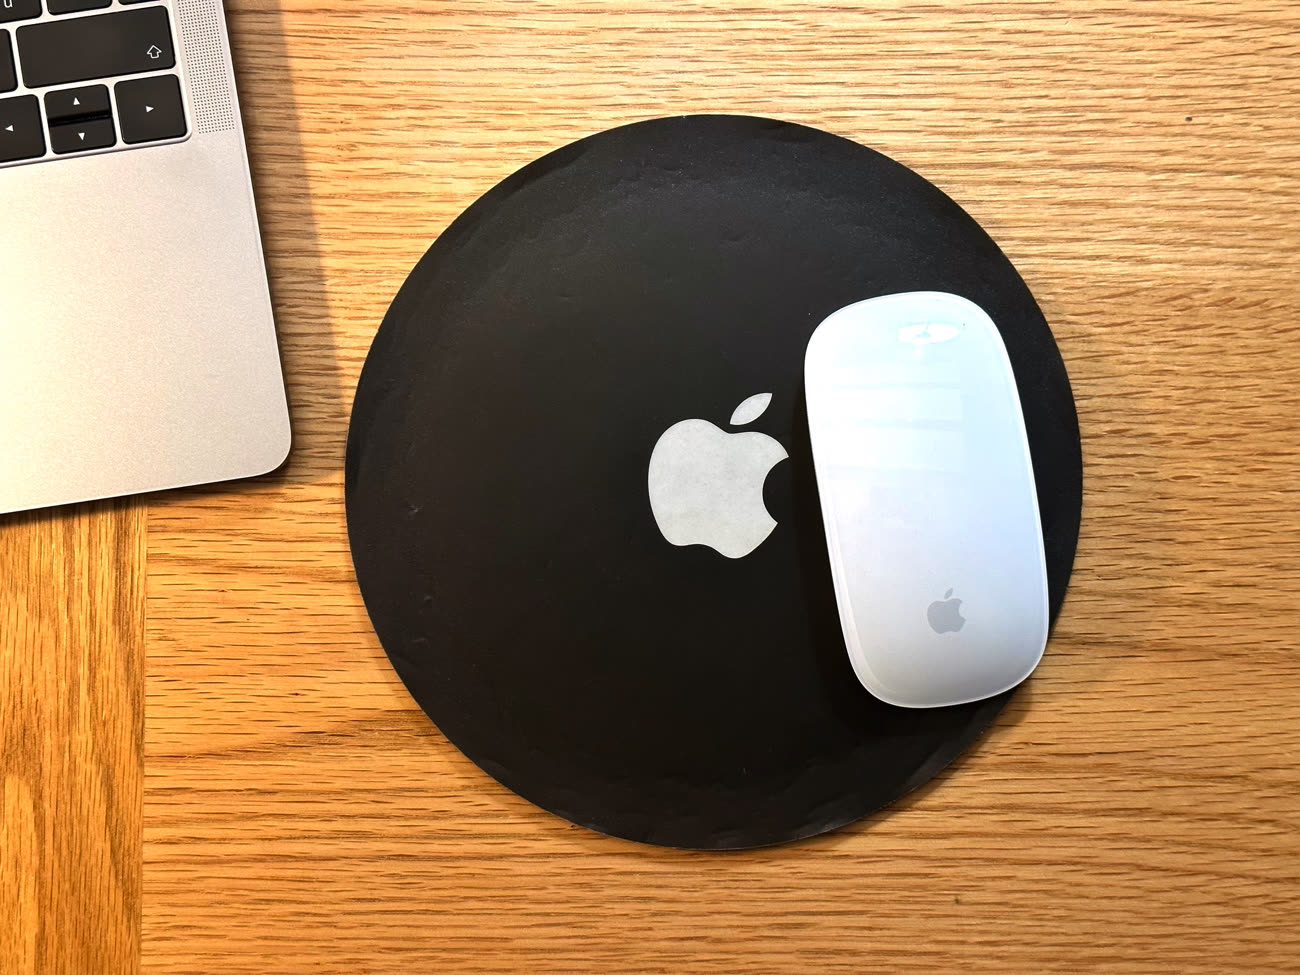 Le tapis de souris qui recharge votre iPhone !